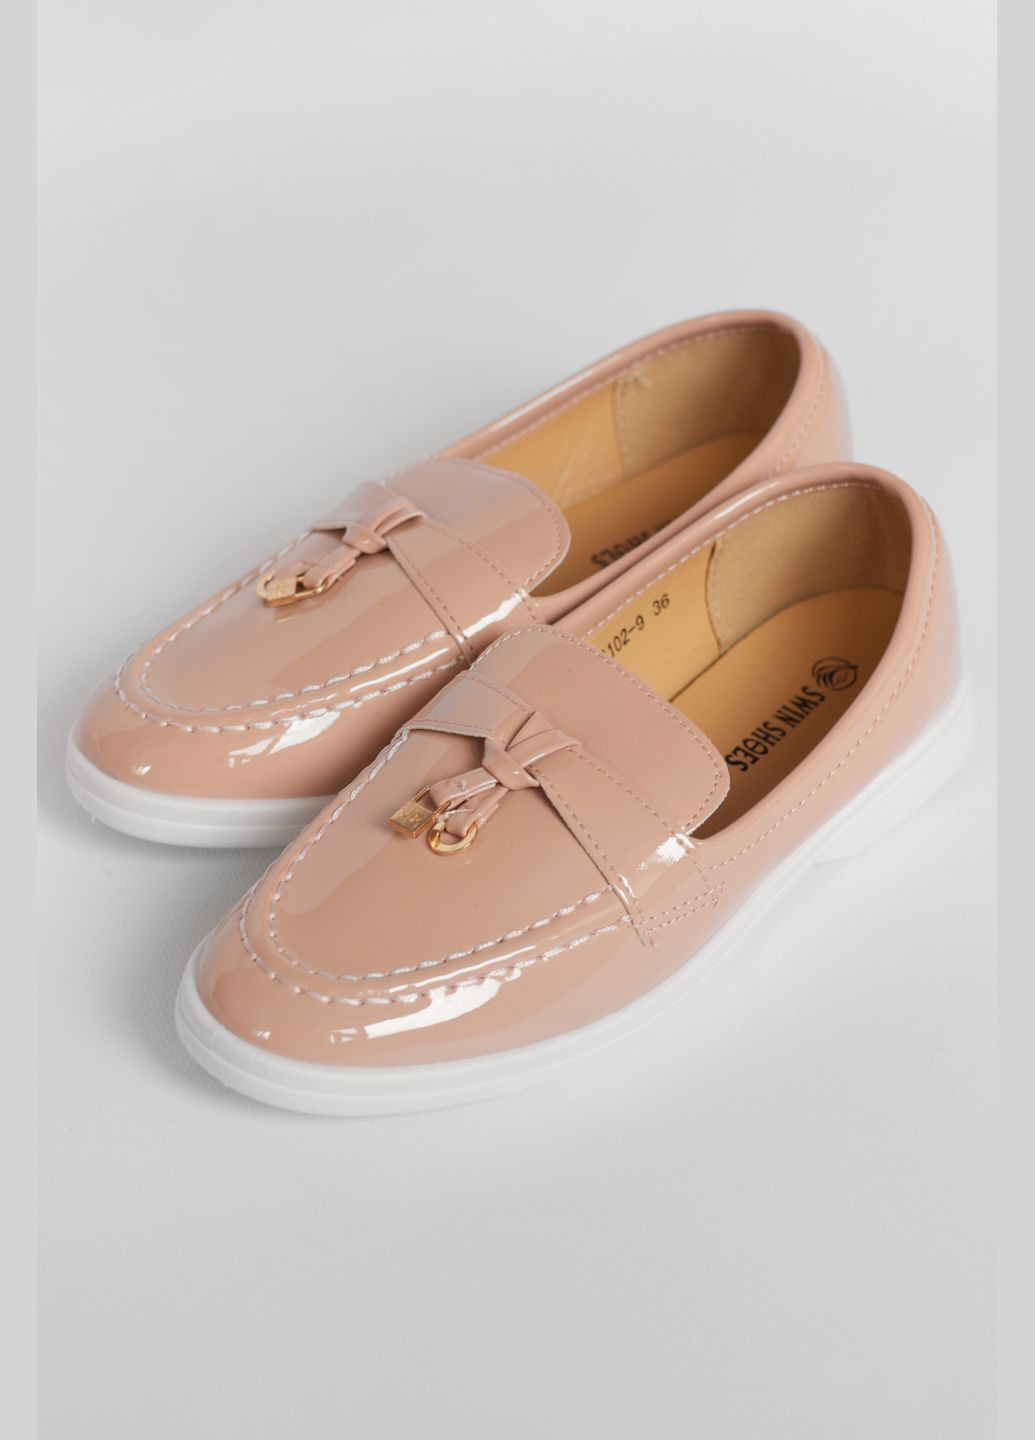 Туфли-лоферы женские светло-розового цвета Let's Shop с цепочками